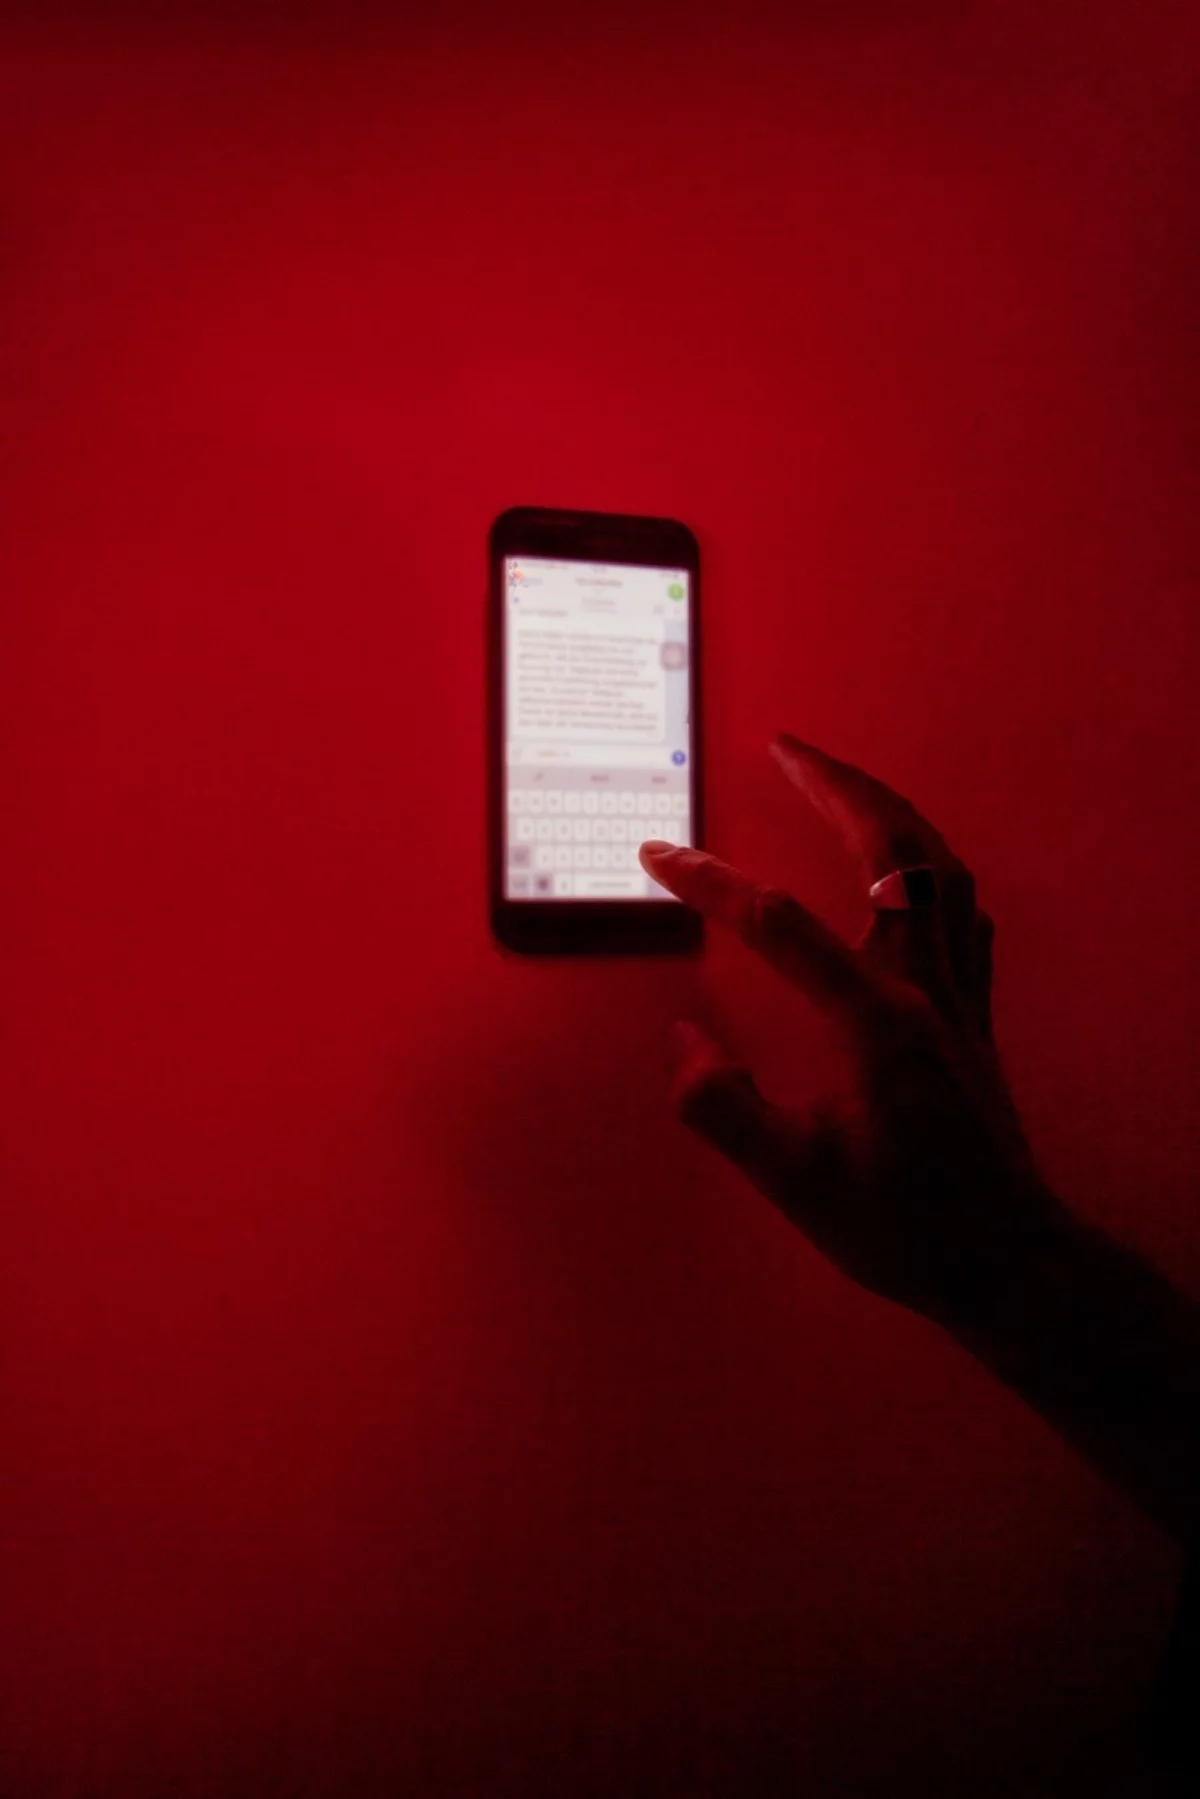 Vor einem roten Hintergrund befindet sich ein Smartphone, auf dem ein Messengerdienst geöffnet ist. Eine Hand tippt darauf eine Nachricht ein.